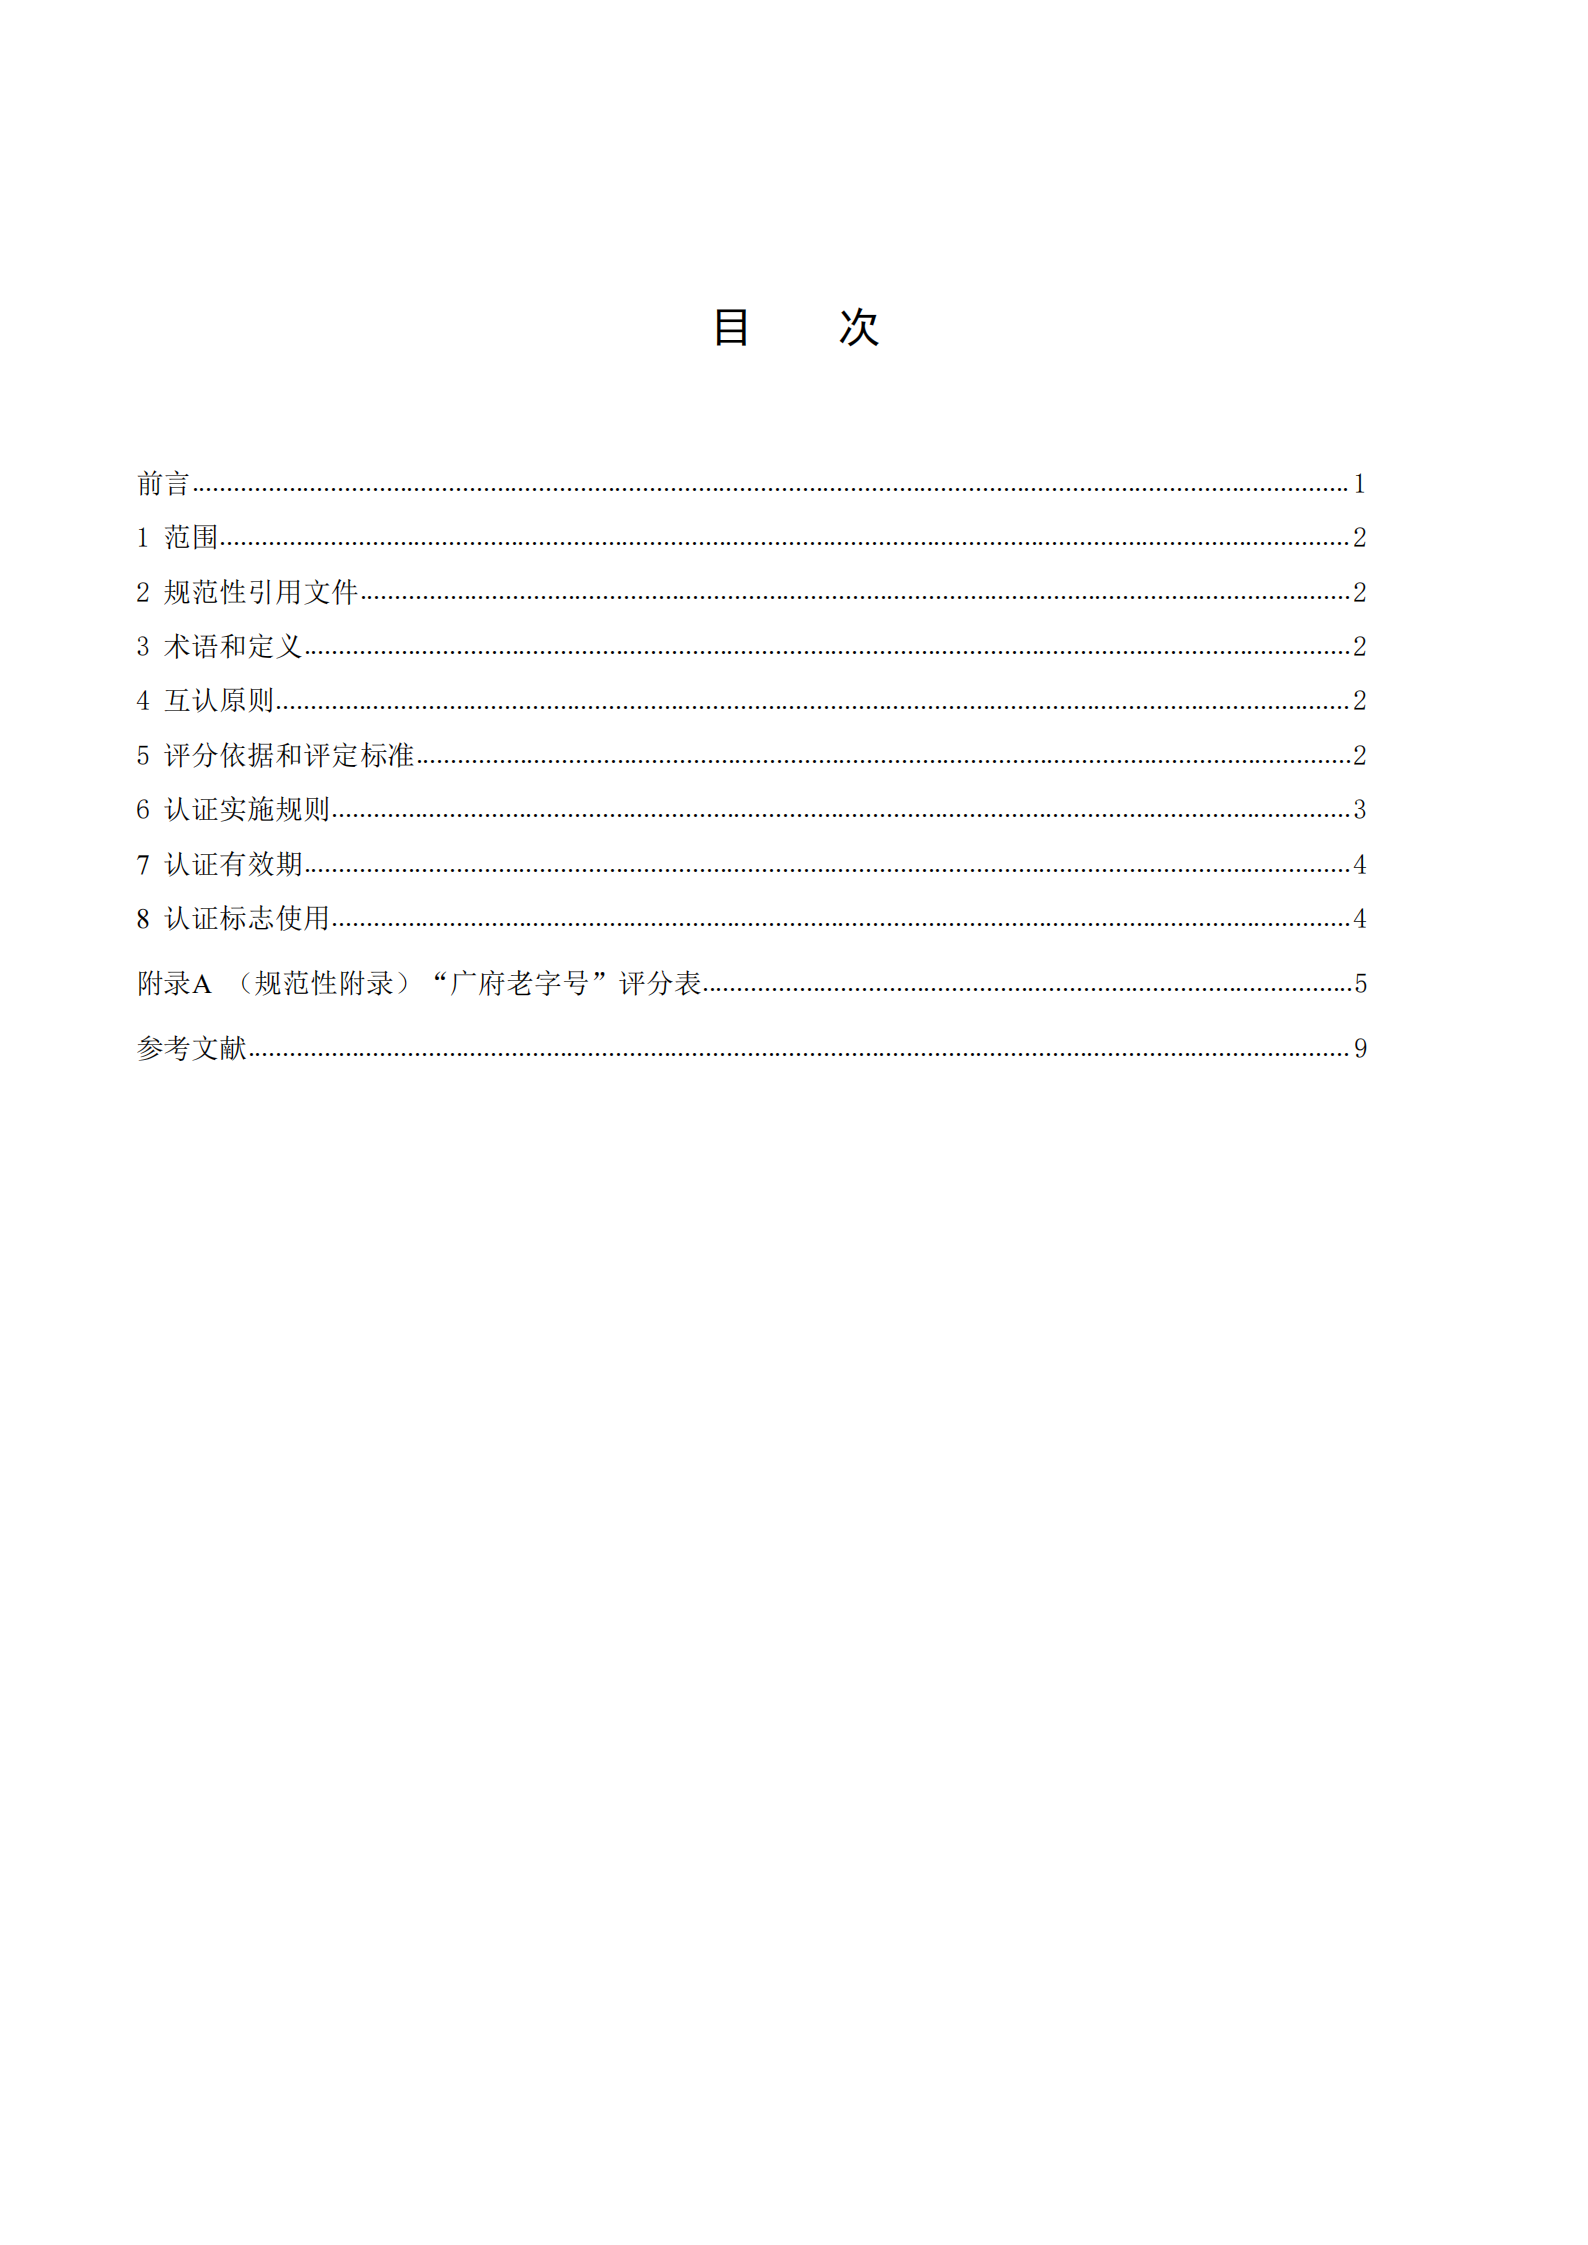 广府老字号认证技术规范(1)_01.png